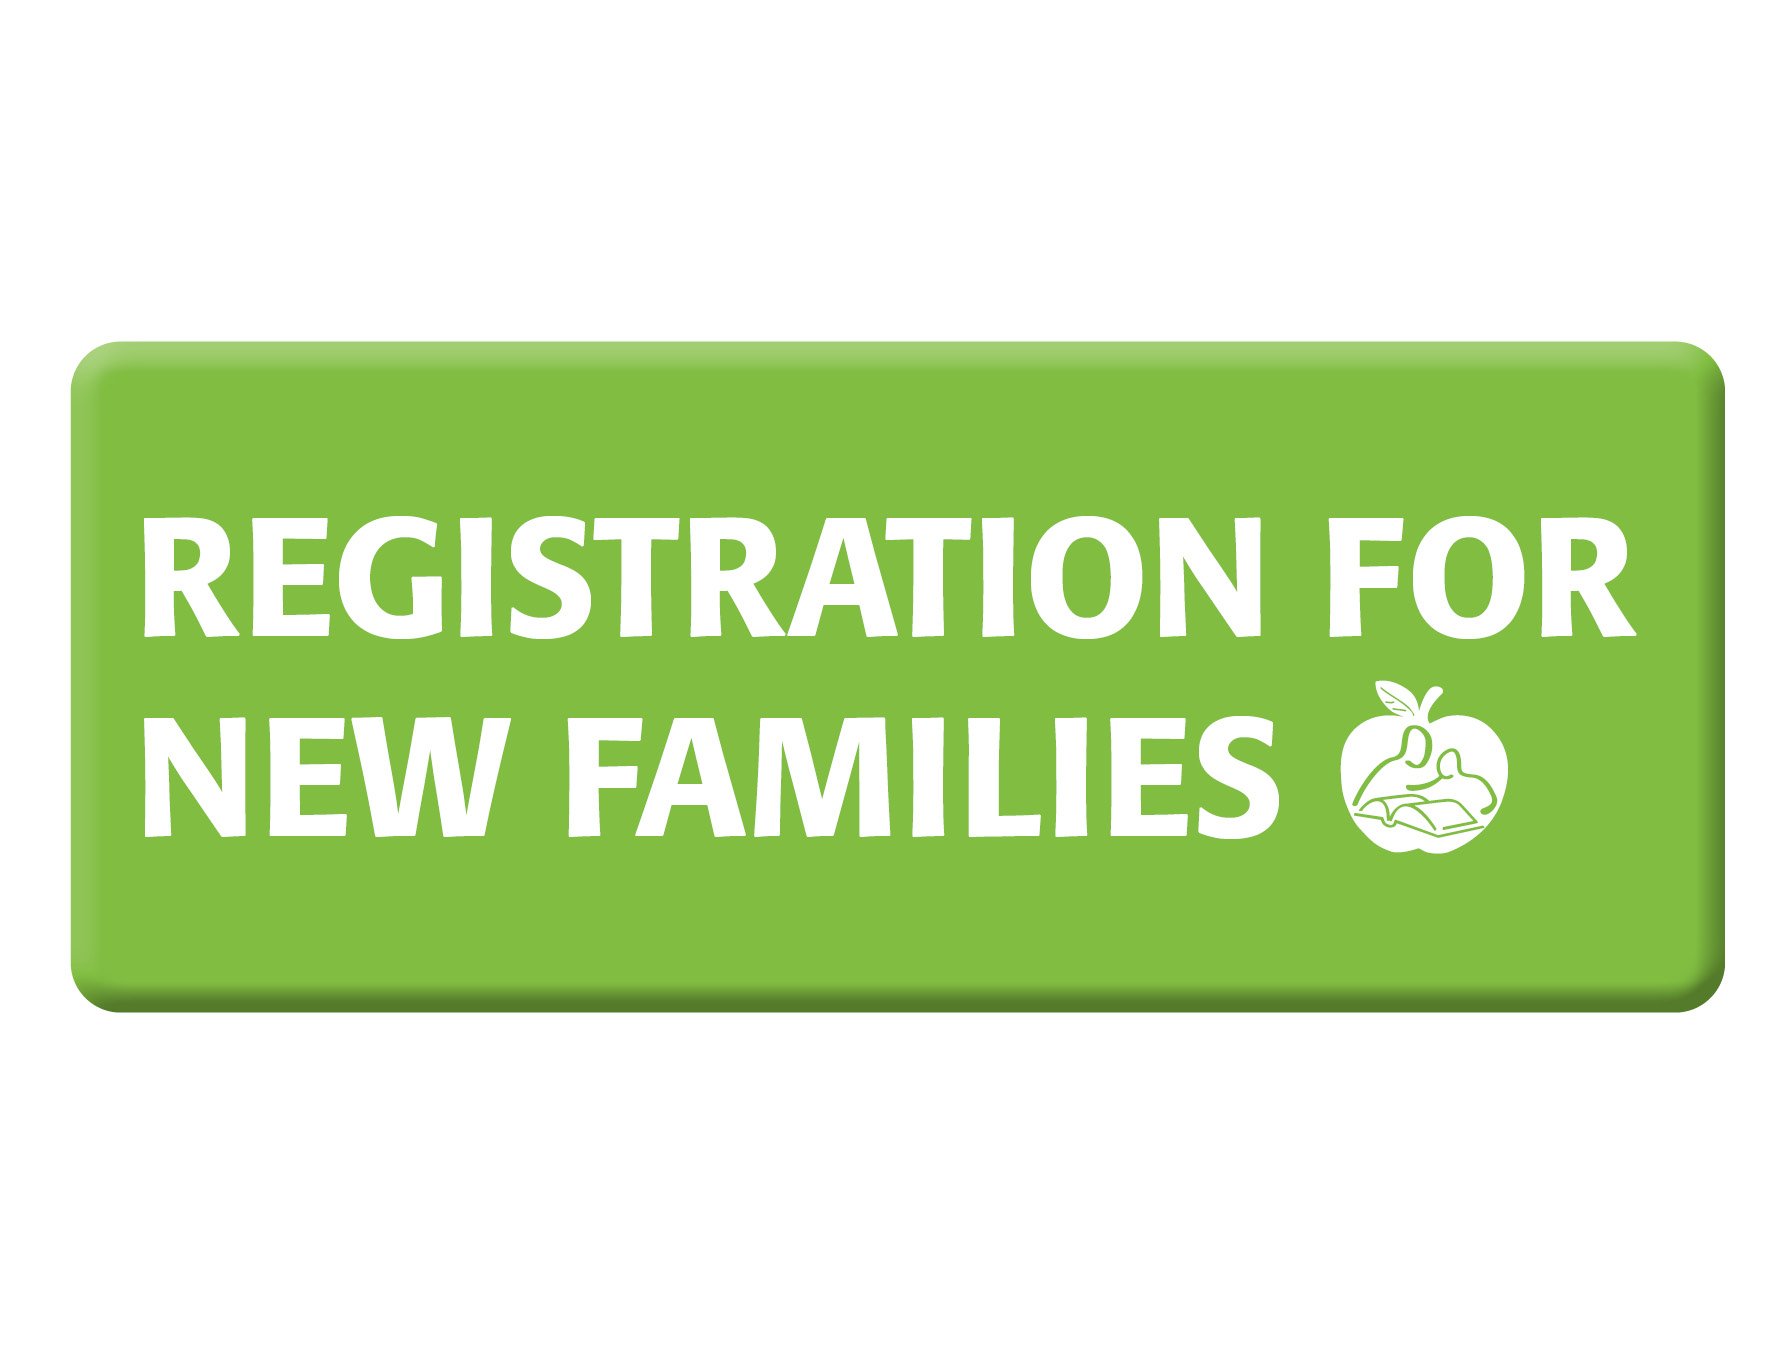 Registration_For_New_Families.jpg